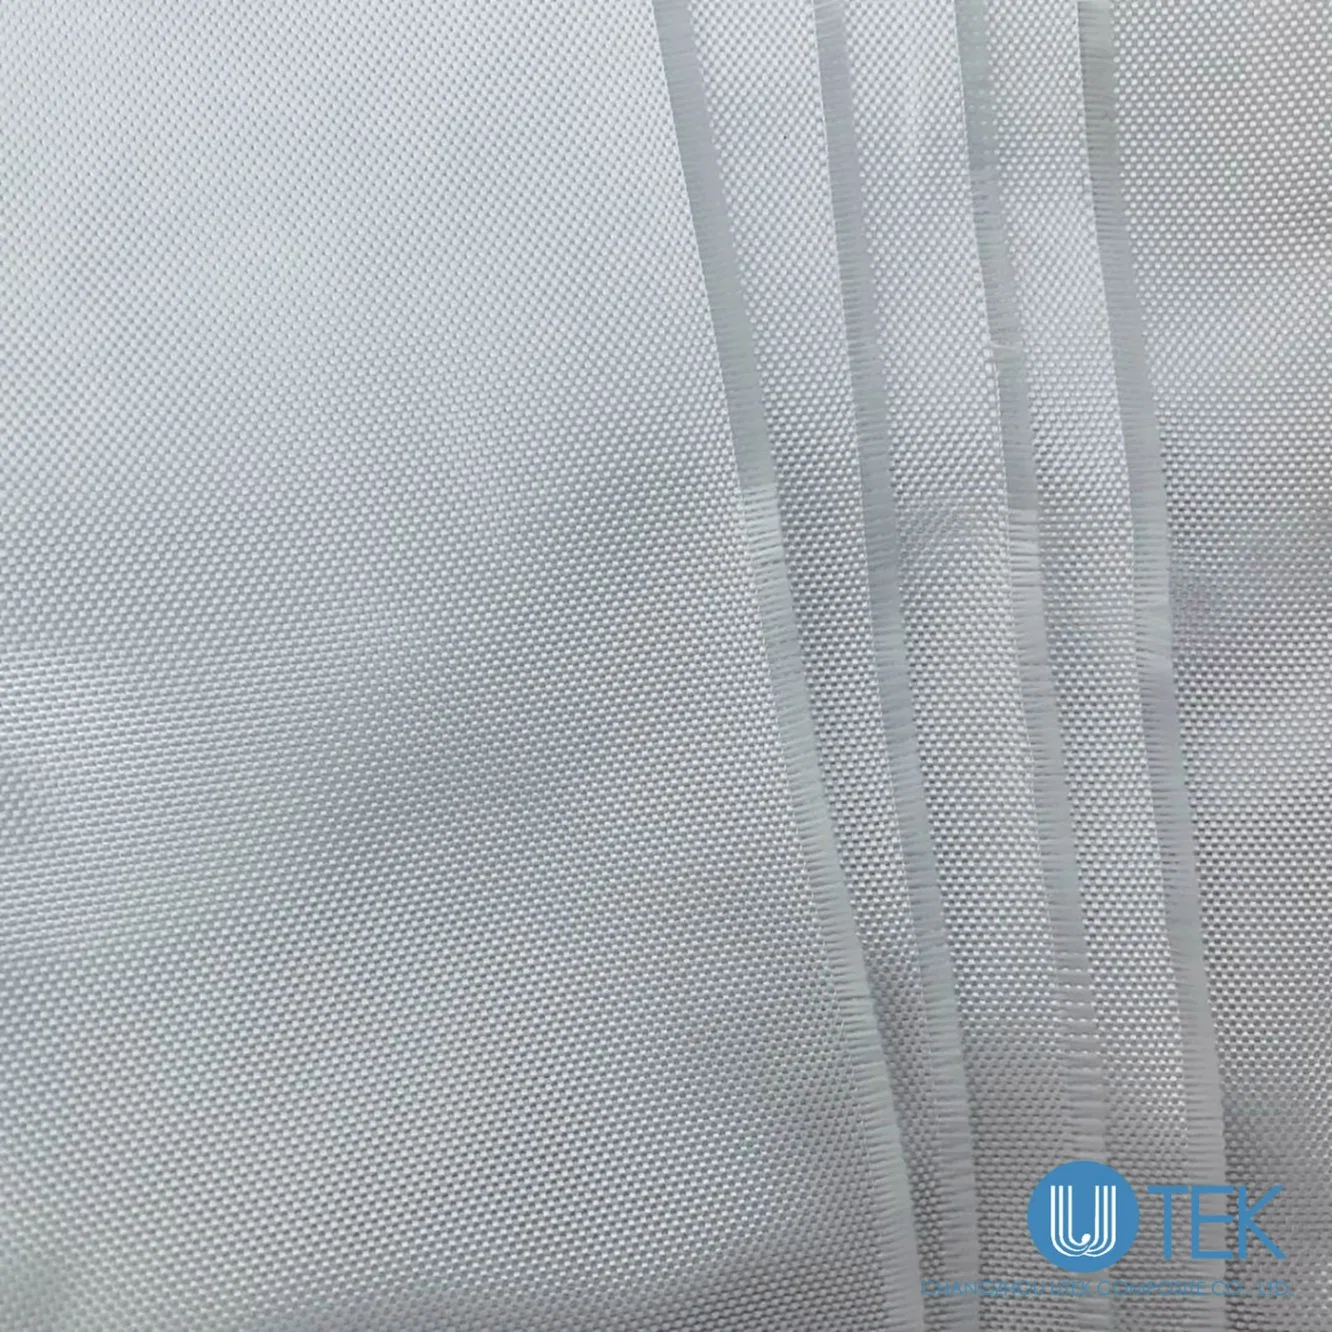 Tissu en fibre de verre de qualité électronique 2116 pour l'isolation des stratifiés cuivrés.